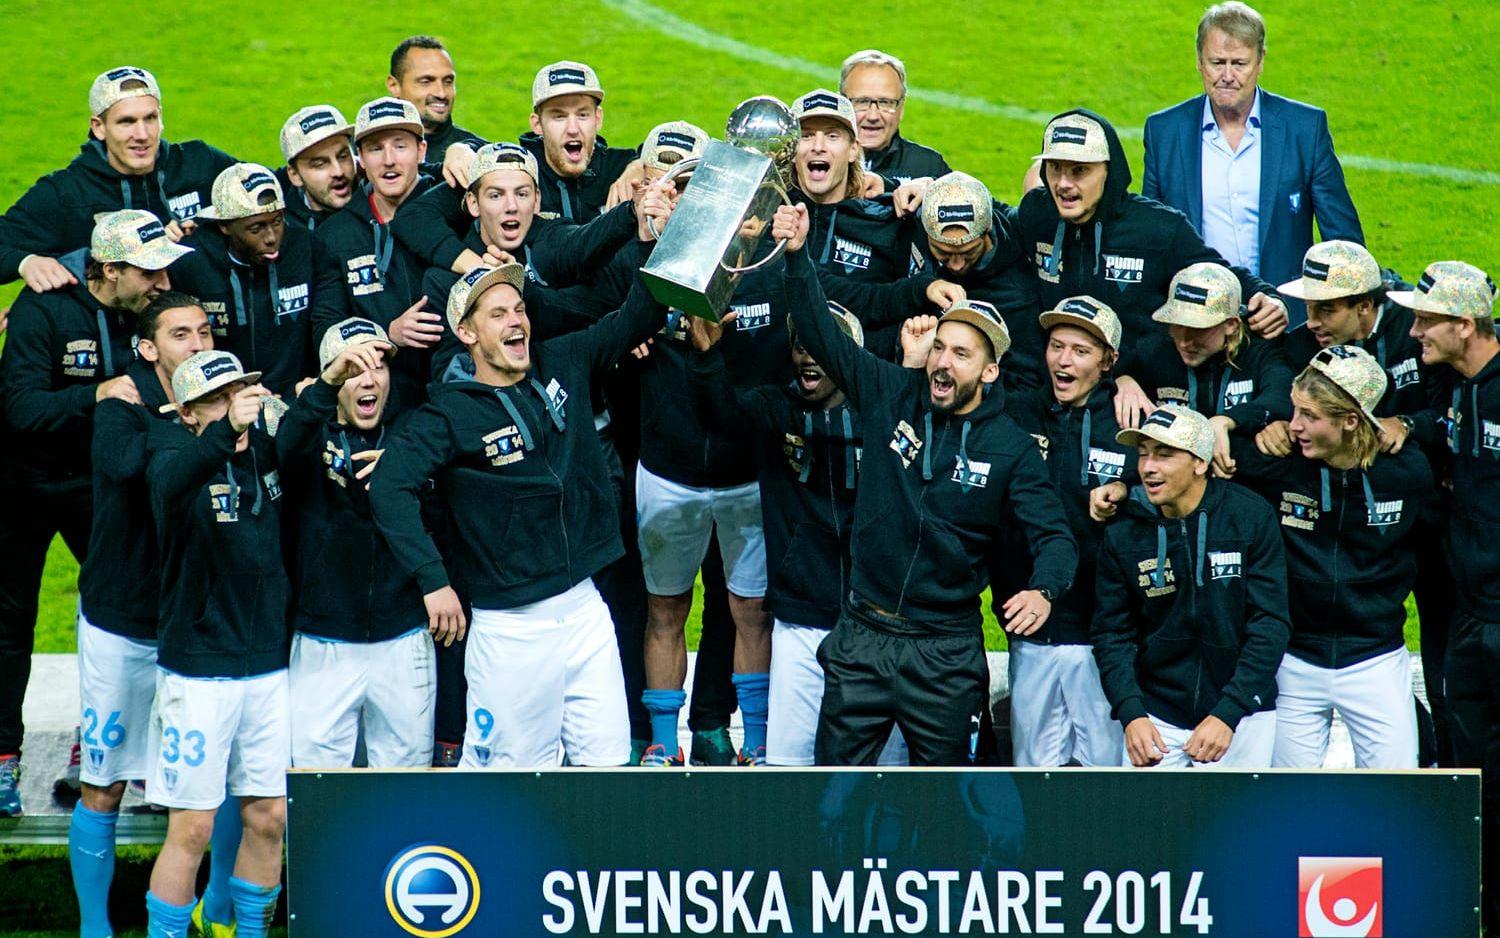 2014: Malmö FF, 13 poäng. Precis som året innan startade Malmö serien magnifikt och hade efter fem omgångar redan kopplat ett ordentligt grepp, som man sedan befäste med att ta ytterligare tre pinnar i omgång 6. Åge Hareides lag fick sedermera också fira guld på hösten.